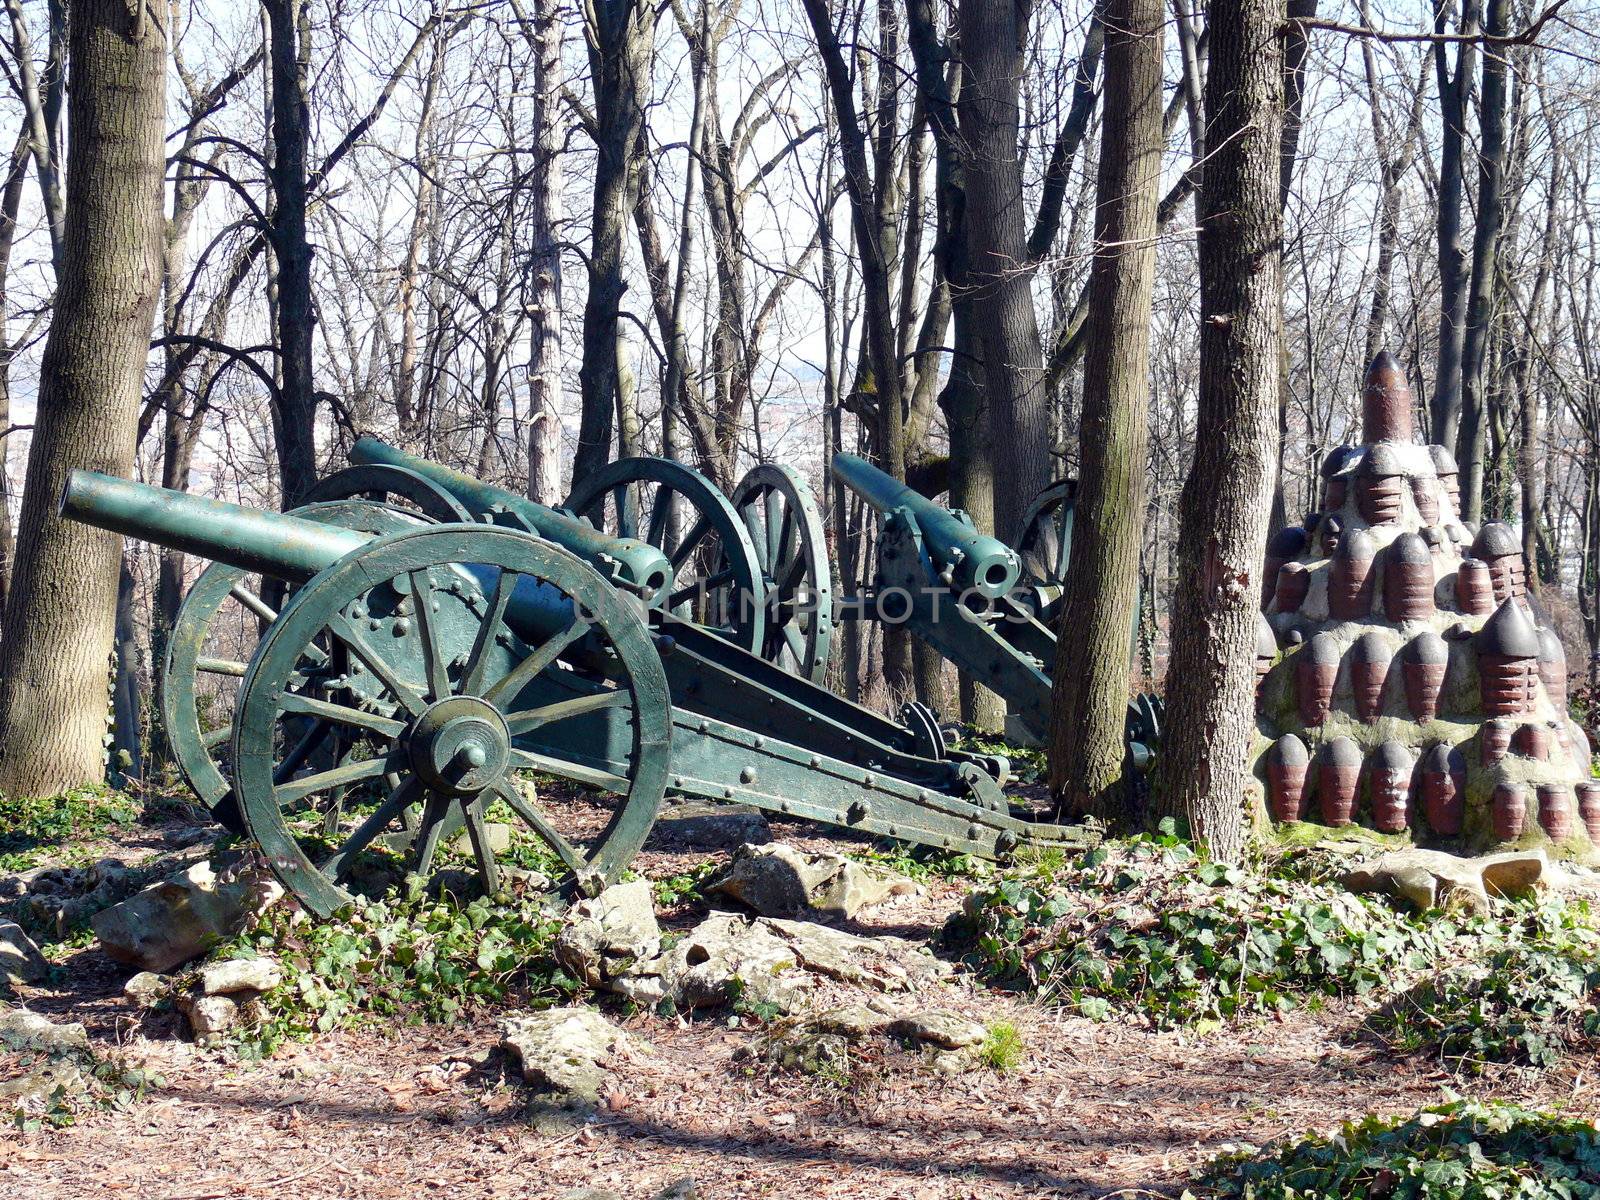 Cannons in Skobelev Park, Pleven, Bulgaria